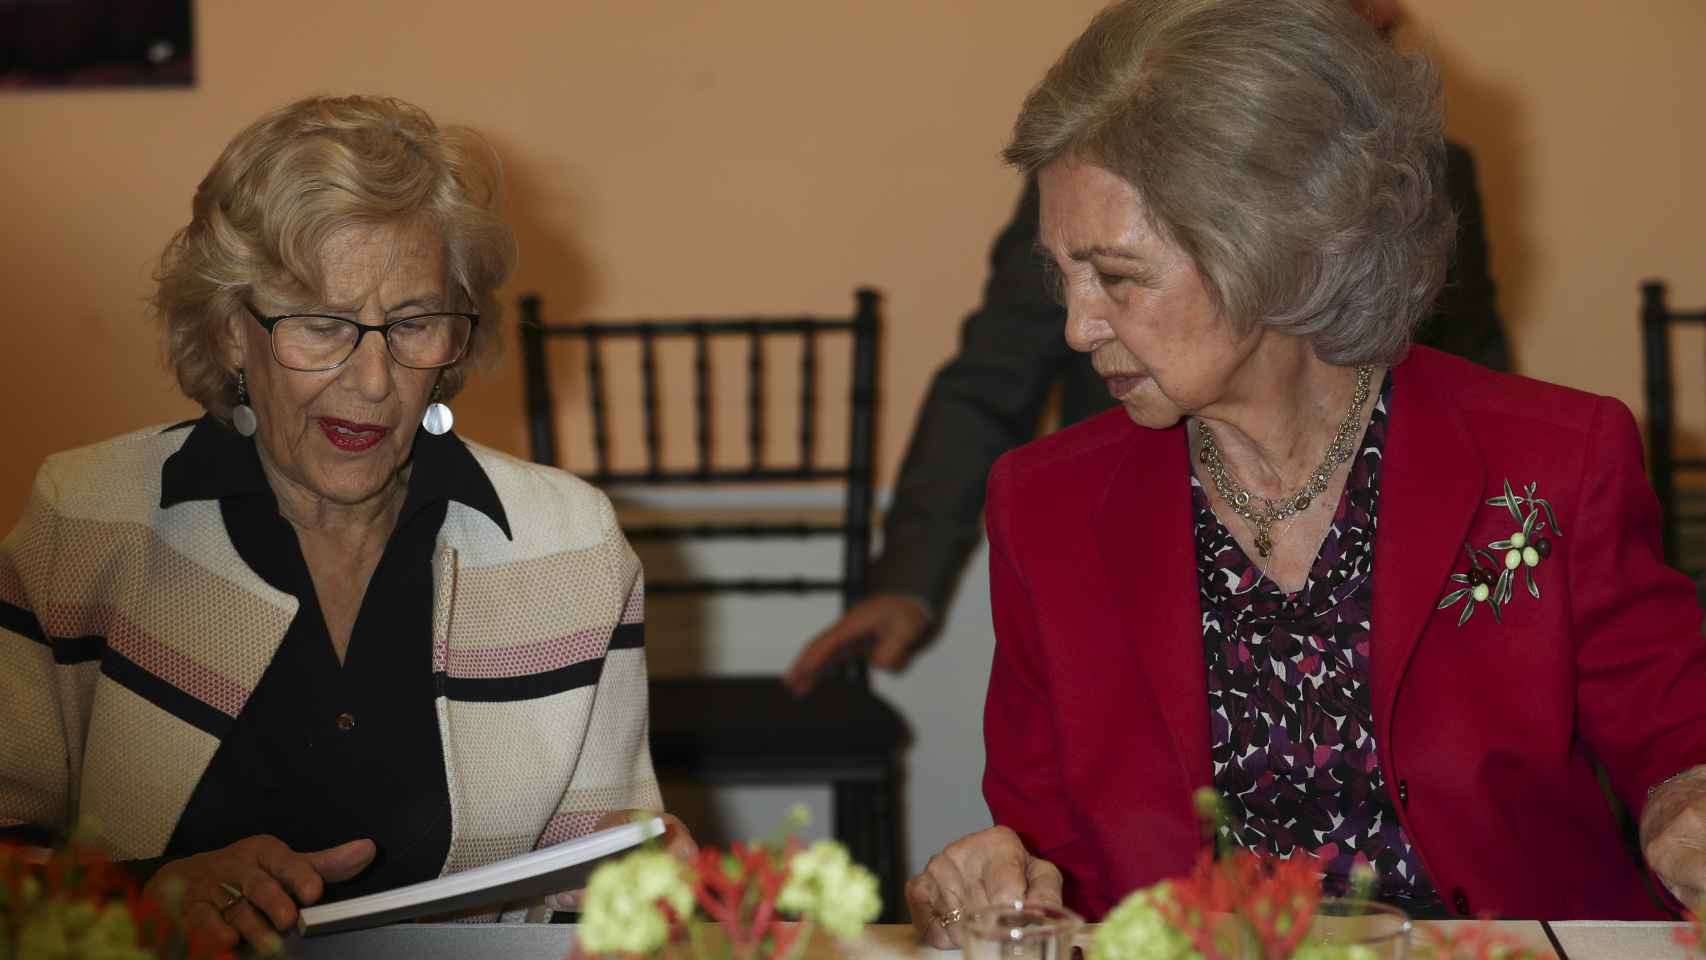 Manuela Carmena y la reina Sofía sentadas juntas durante el evento, mostrando una gran complicidad.